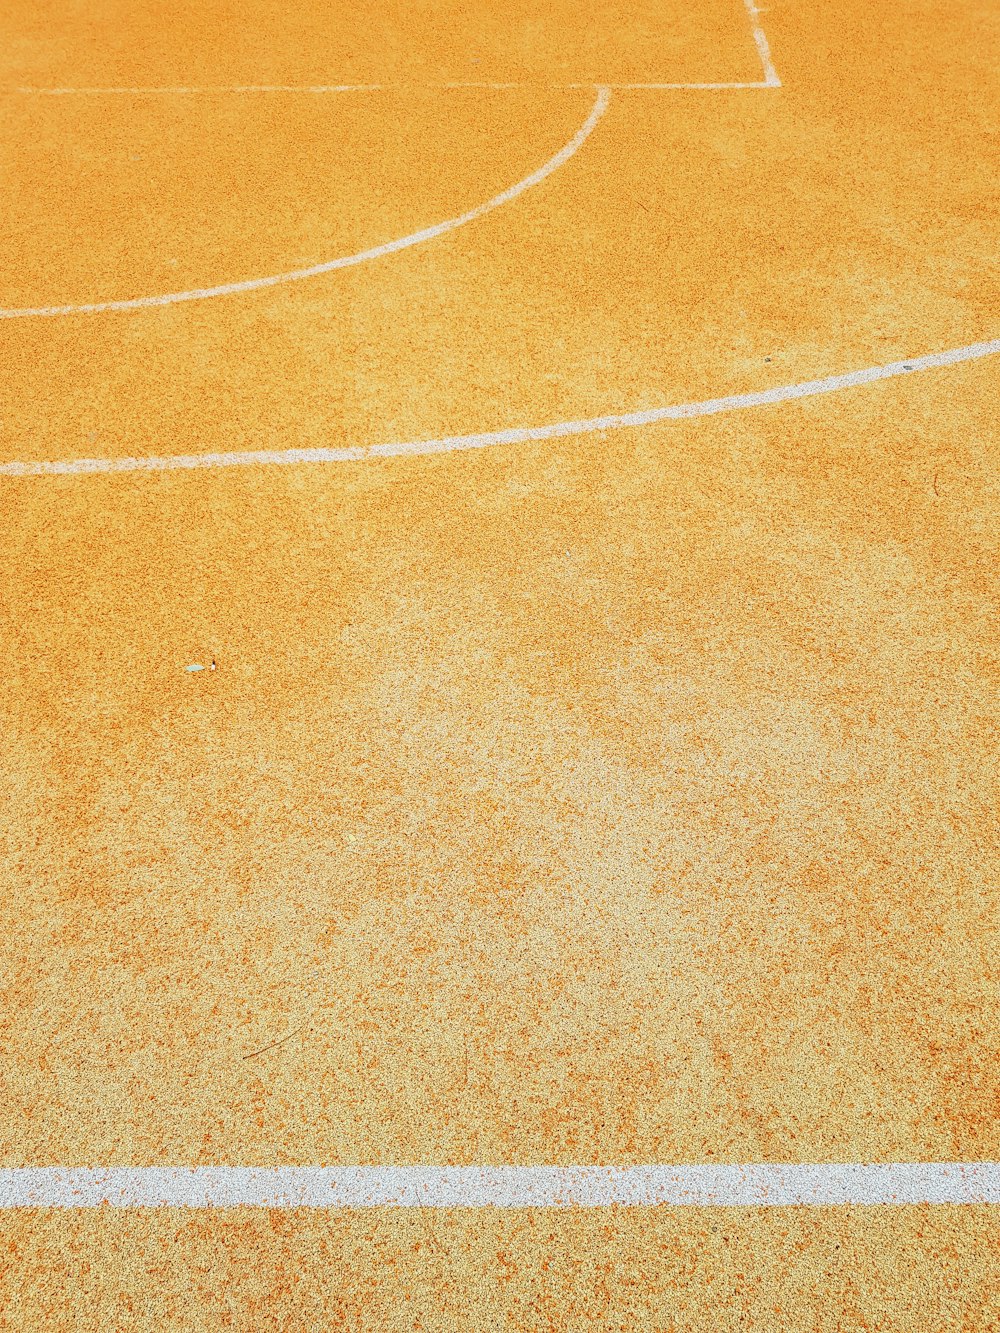 ein Basketballplatz mit einer weißen Linie darauf